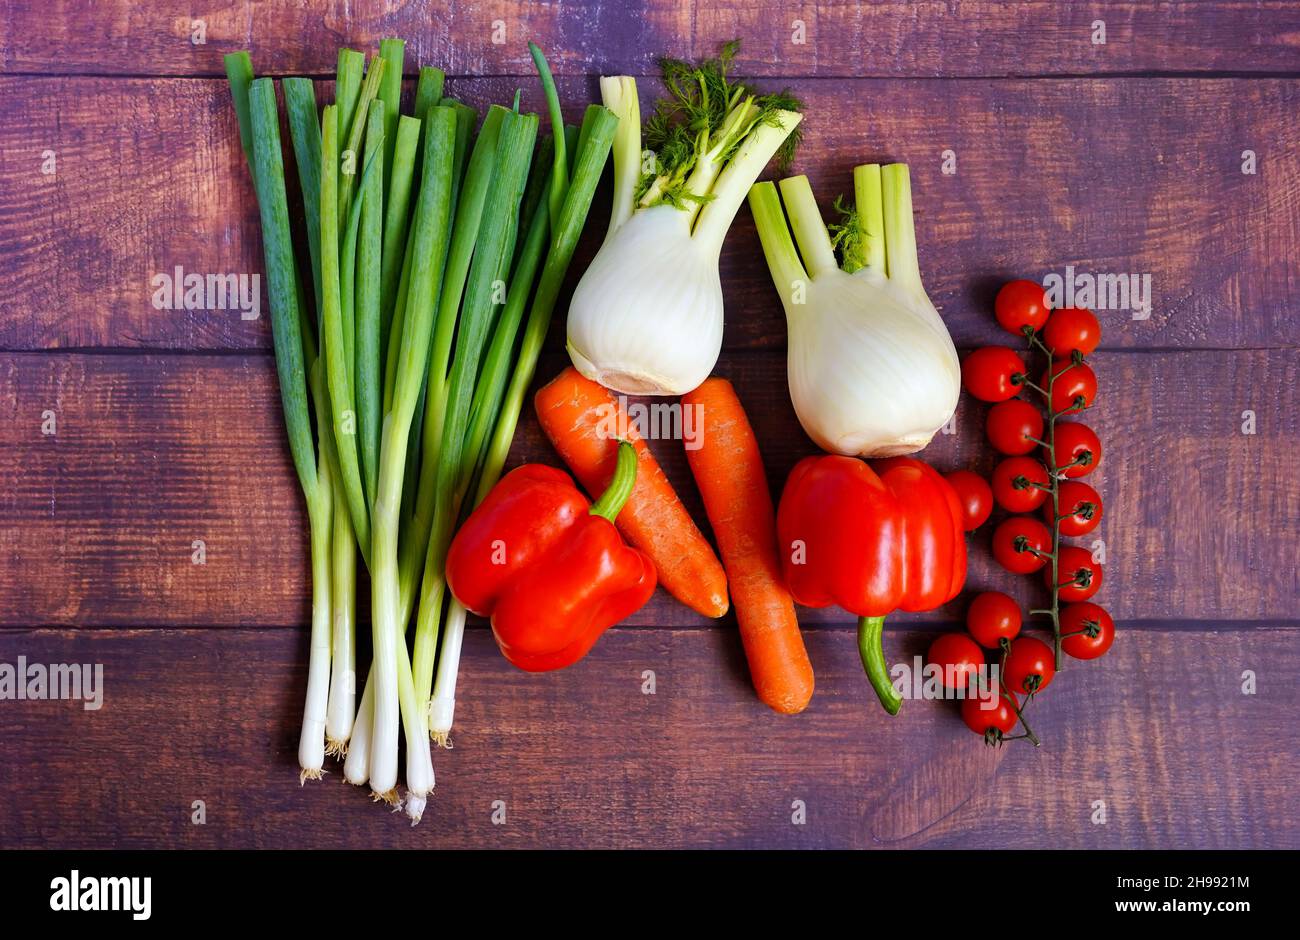 Frische Frühlingszwiebeln, Fenchel, Karotten, Tomaten und Paprika auf einem rustikalen Holztisch. Gesunde Zutaten für die Hausmannskost zur Unterstützung des Immunsystems. Stockfoto